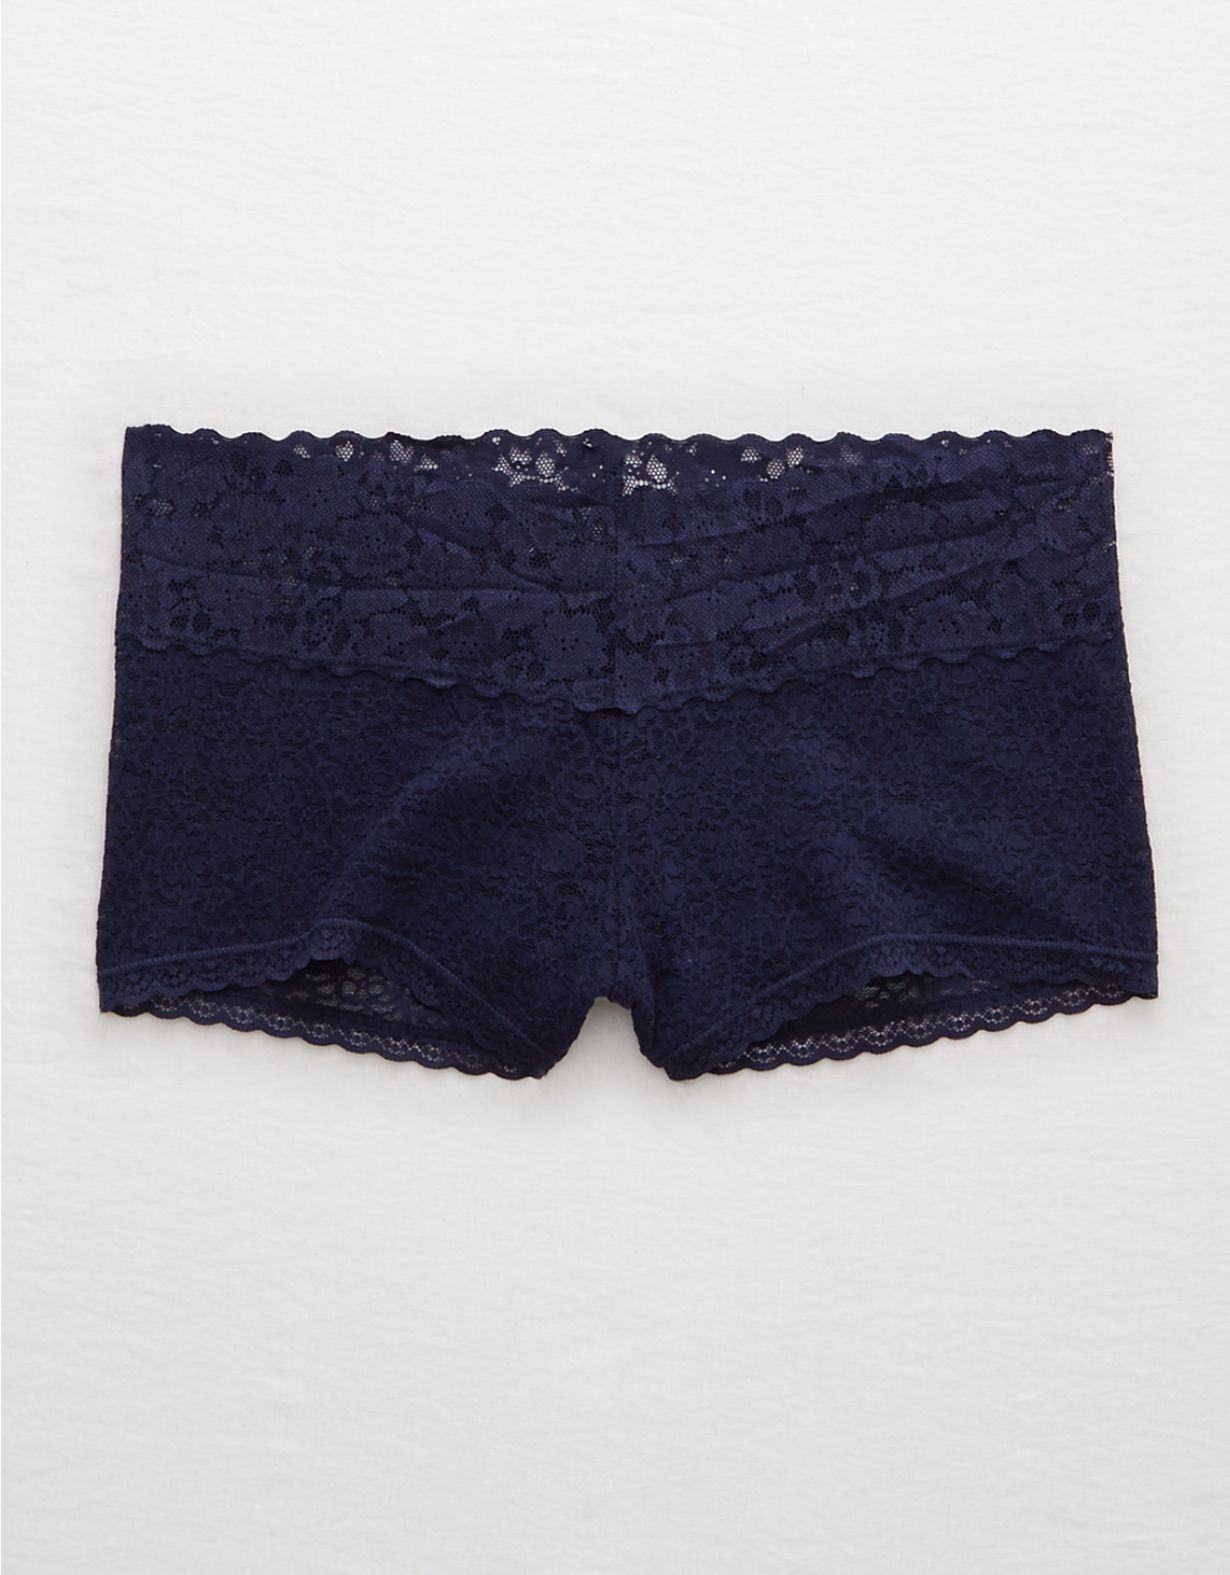 Aerie Lace Boyshort Underwear